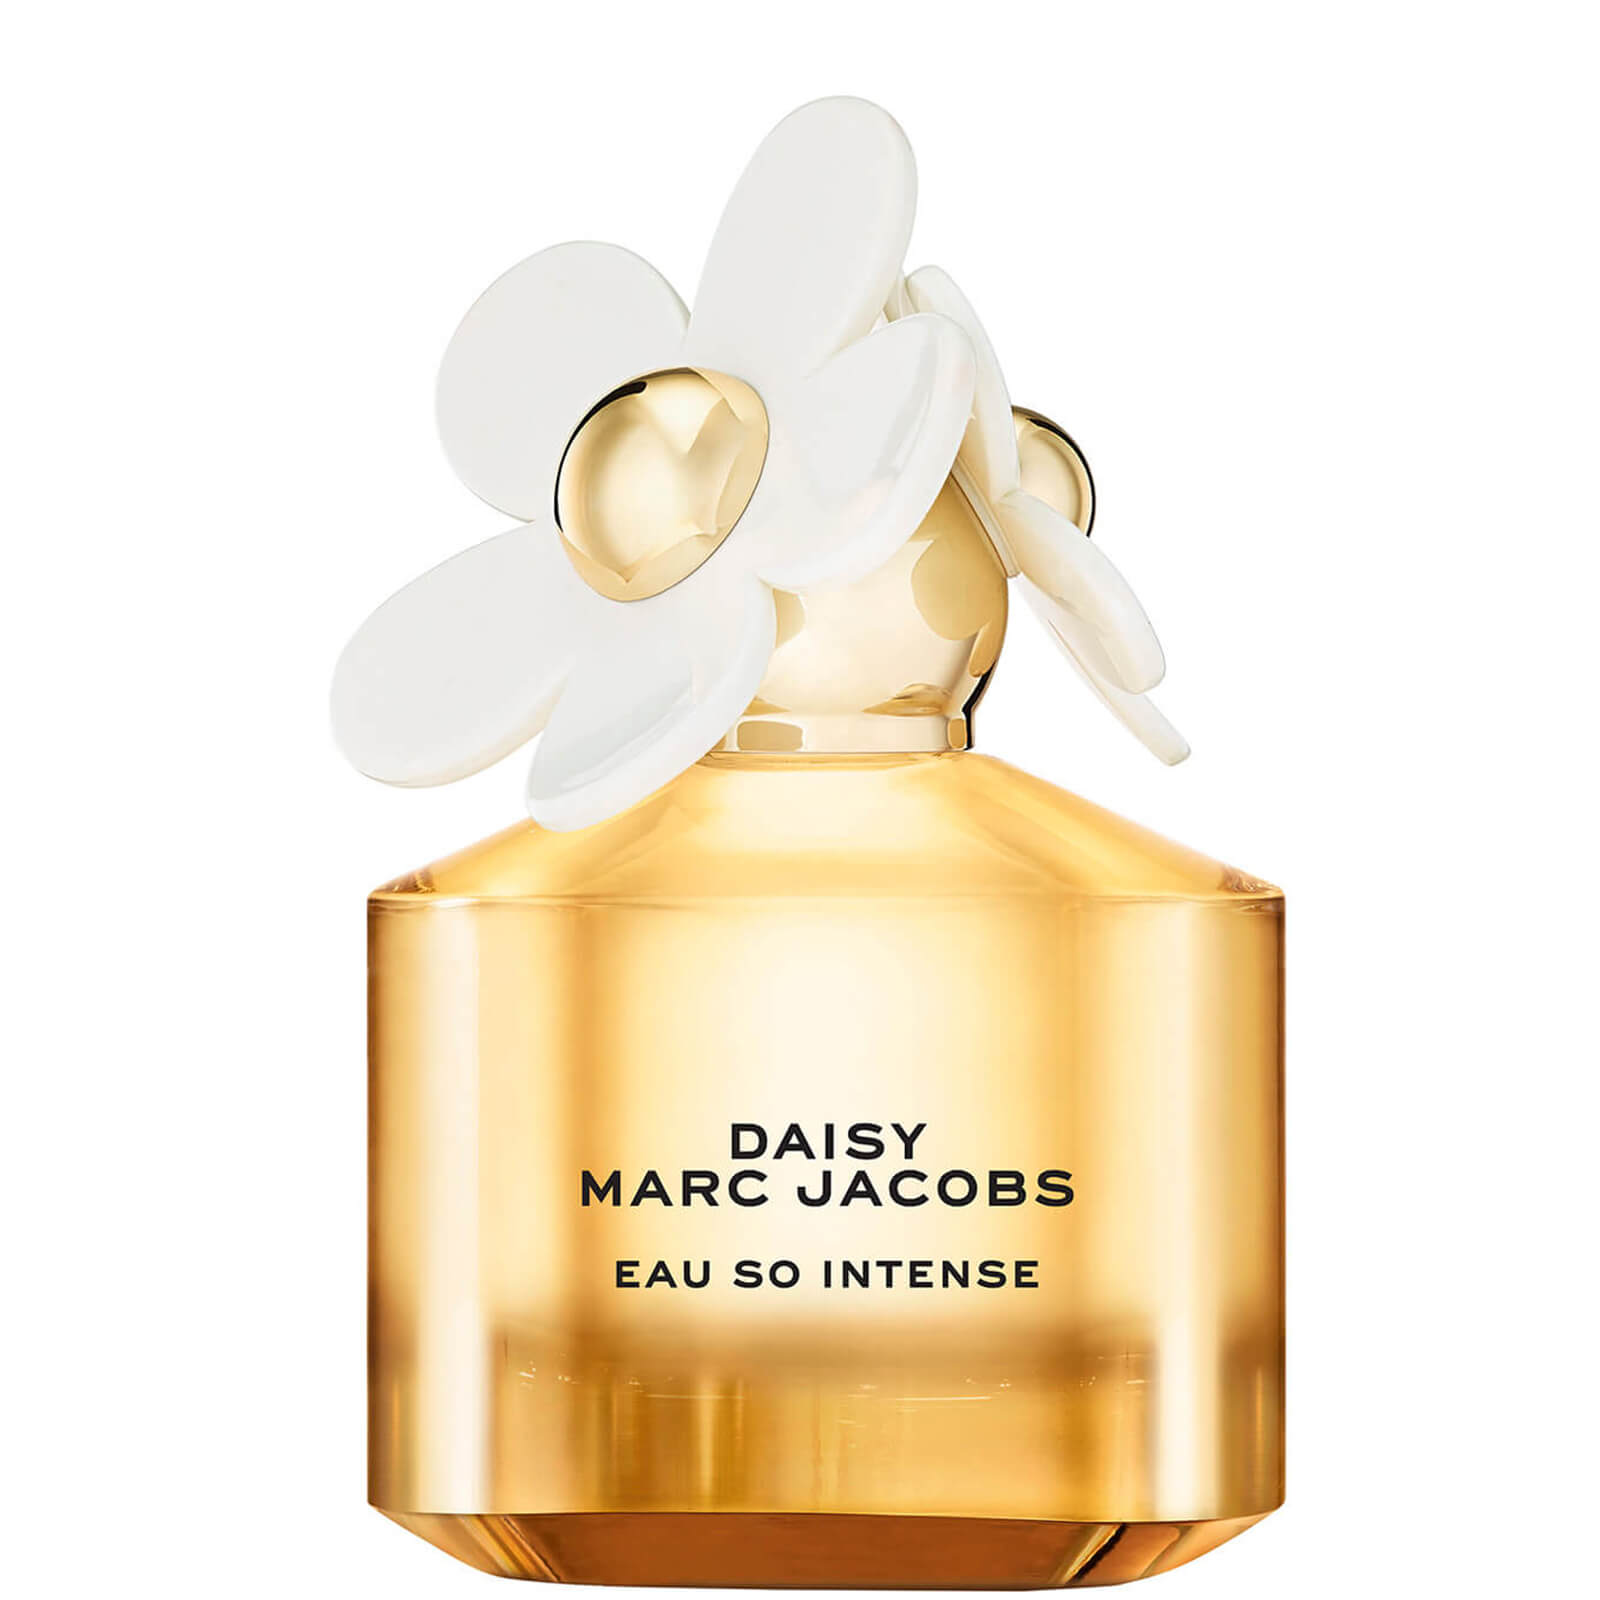 Image of Marc Jacobs Daisy Eau So Intense Eau de Parfum Profumo 100ml